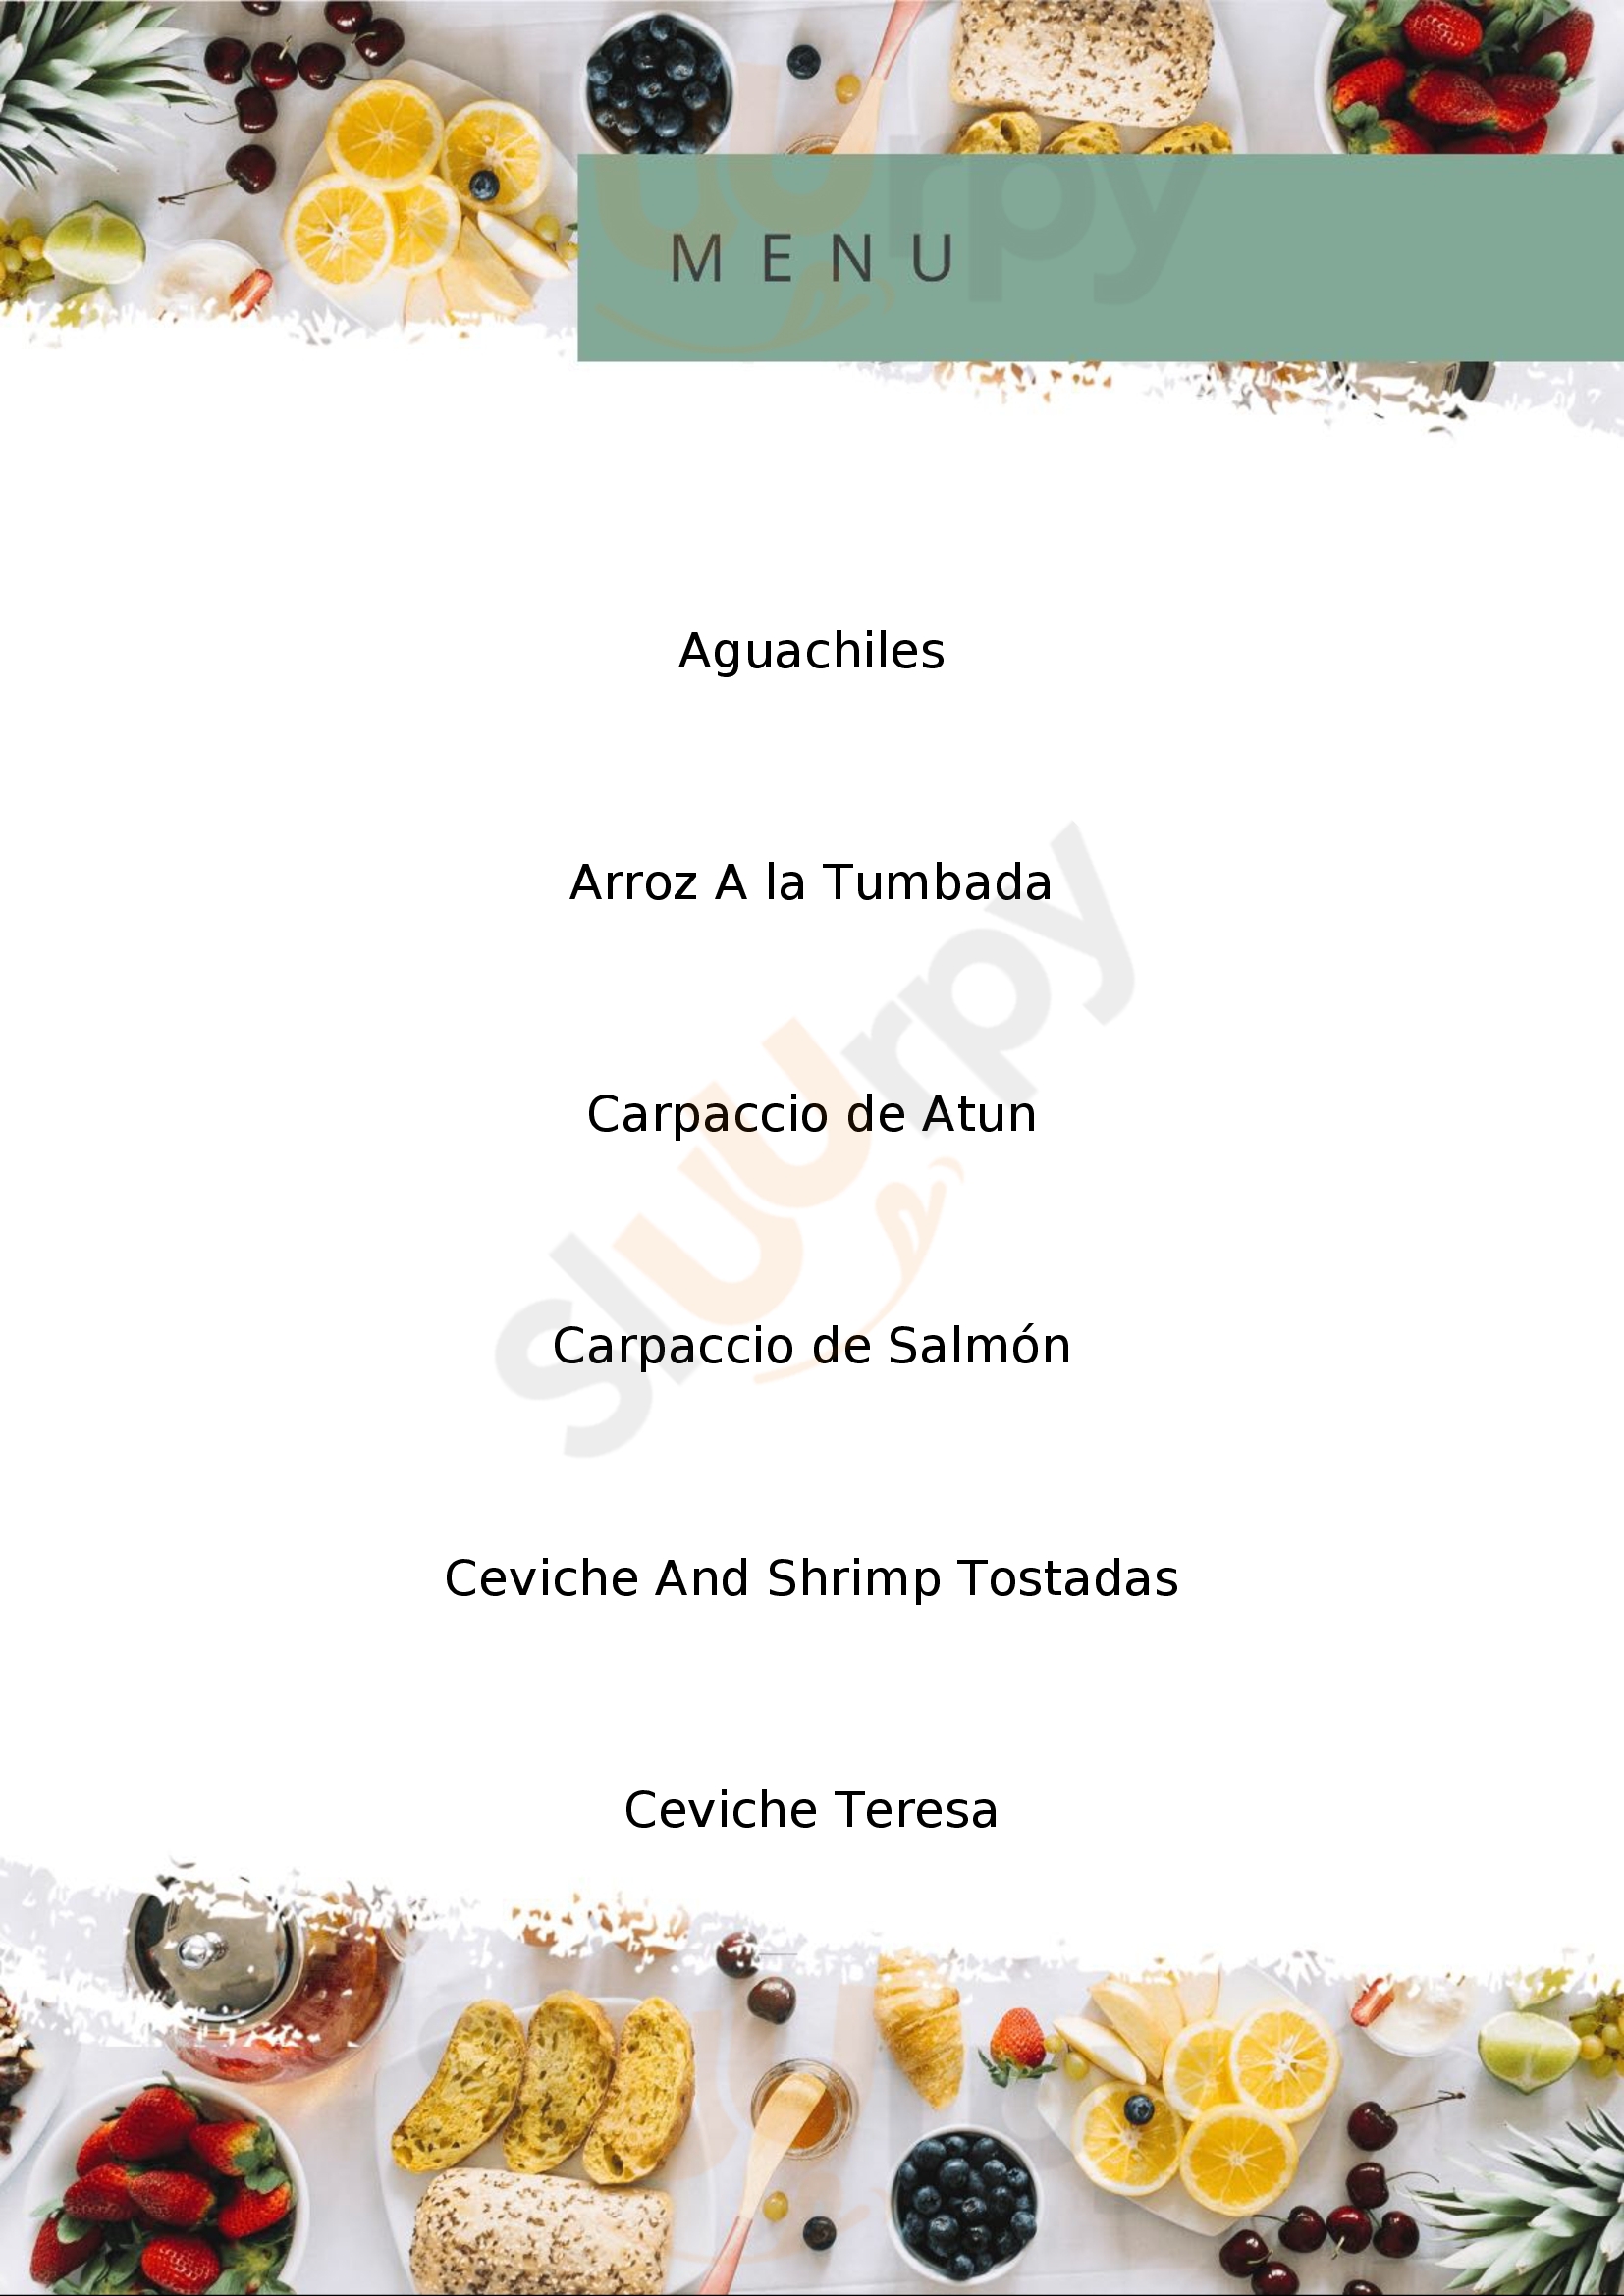 El Puerto Seafood Sma San Miguel de Allende Menu - 1